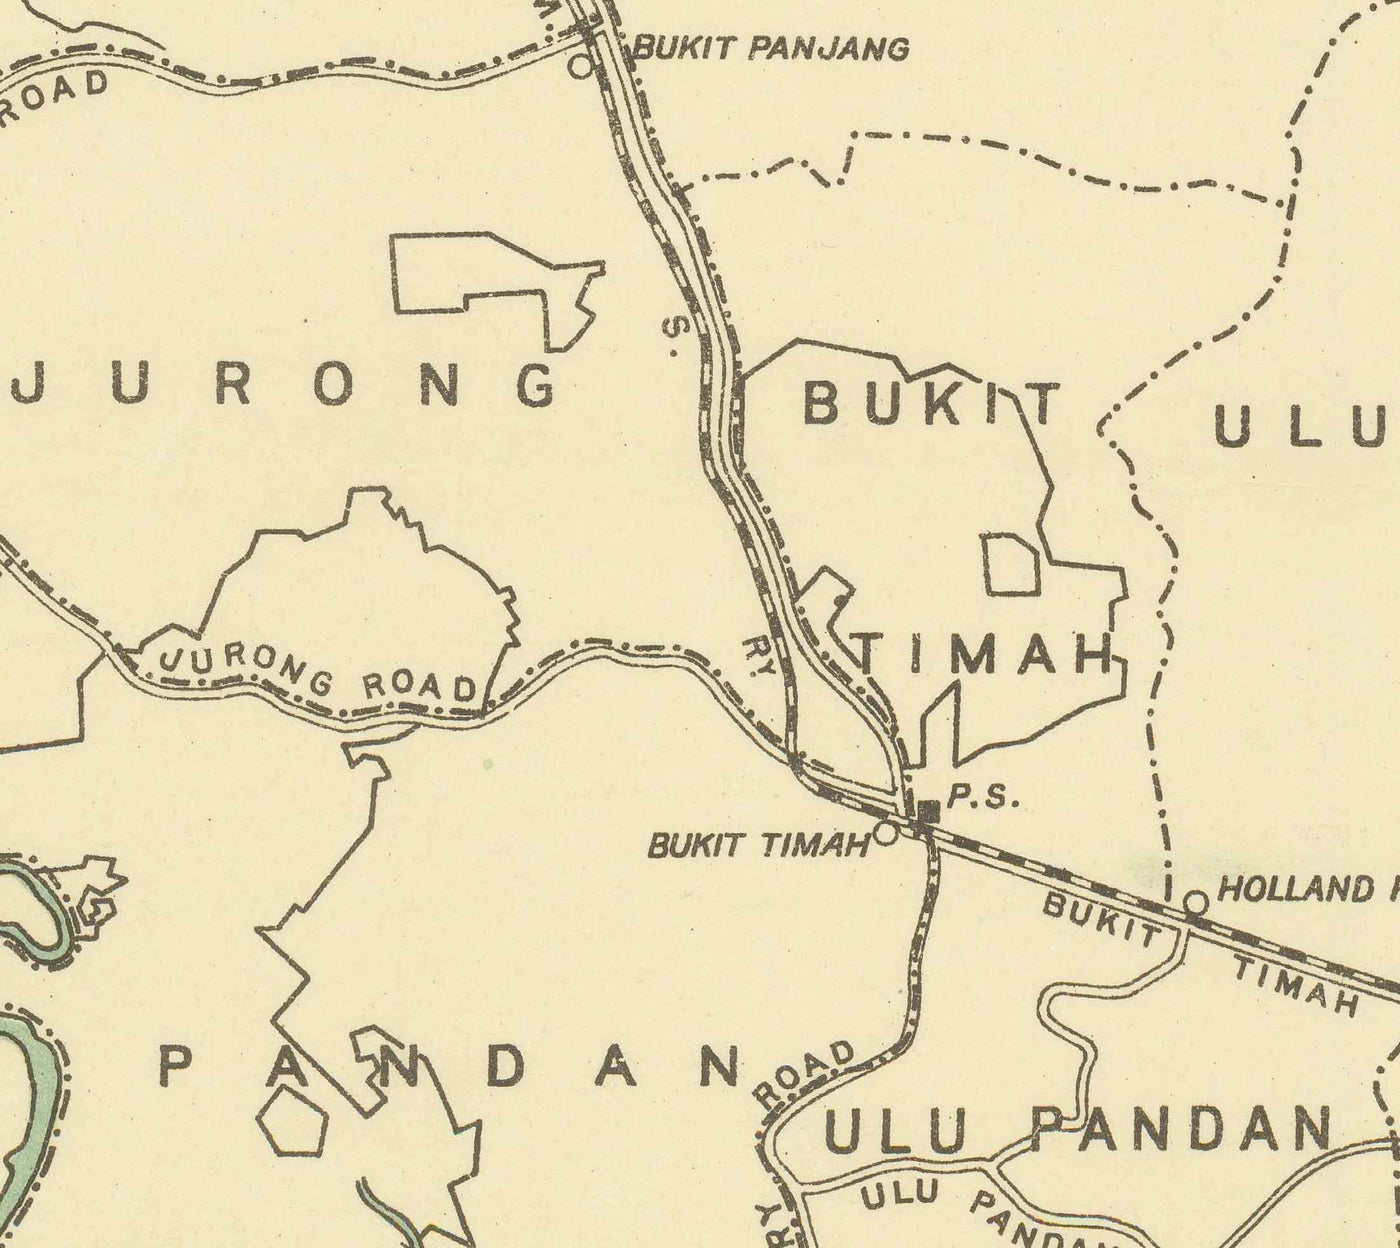 Alte Karte der Insel Singapur, 1920 - Straßen, Eisenbahn, Sembawang, Tampines, Tuas, Johor Bahru, Malaysia